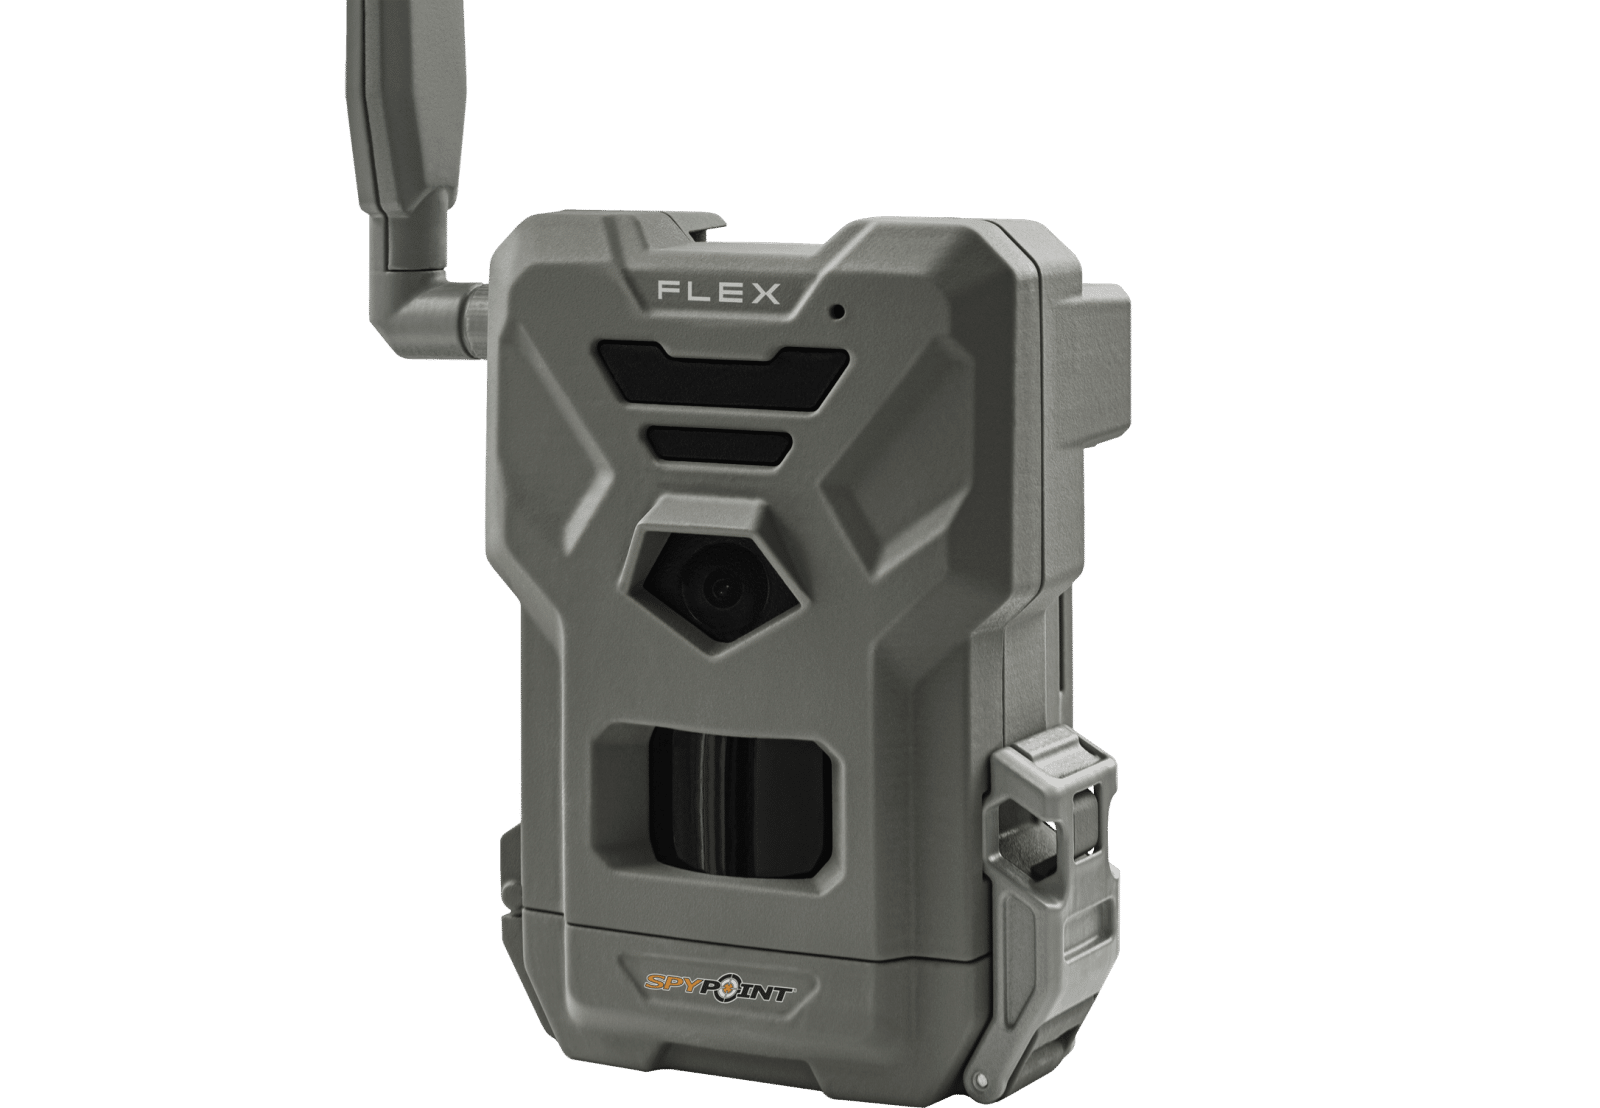 Spypoint Flex Cellular Trail Camera